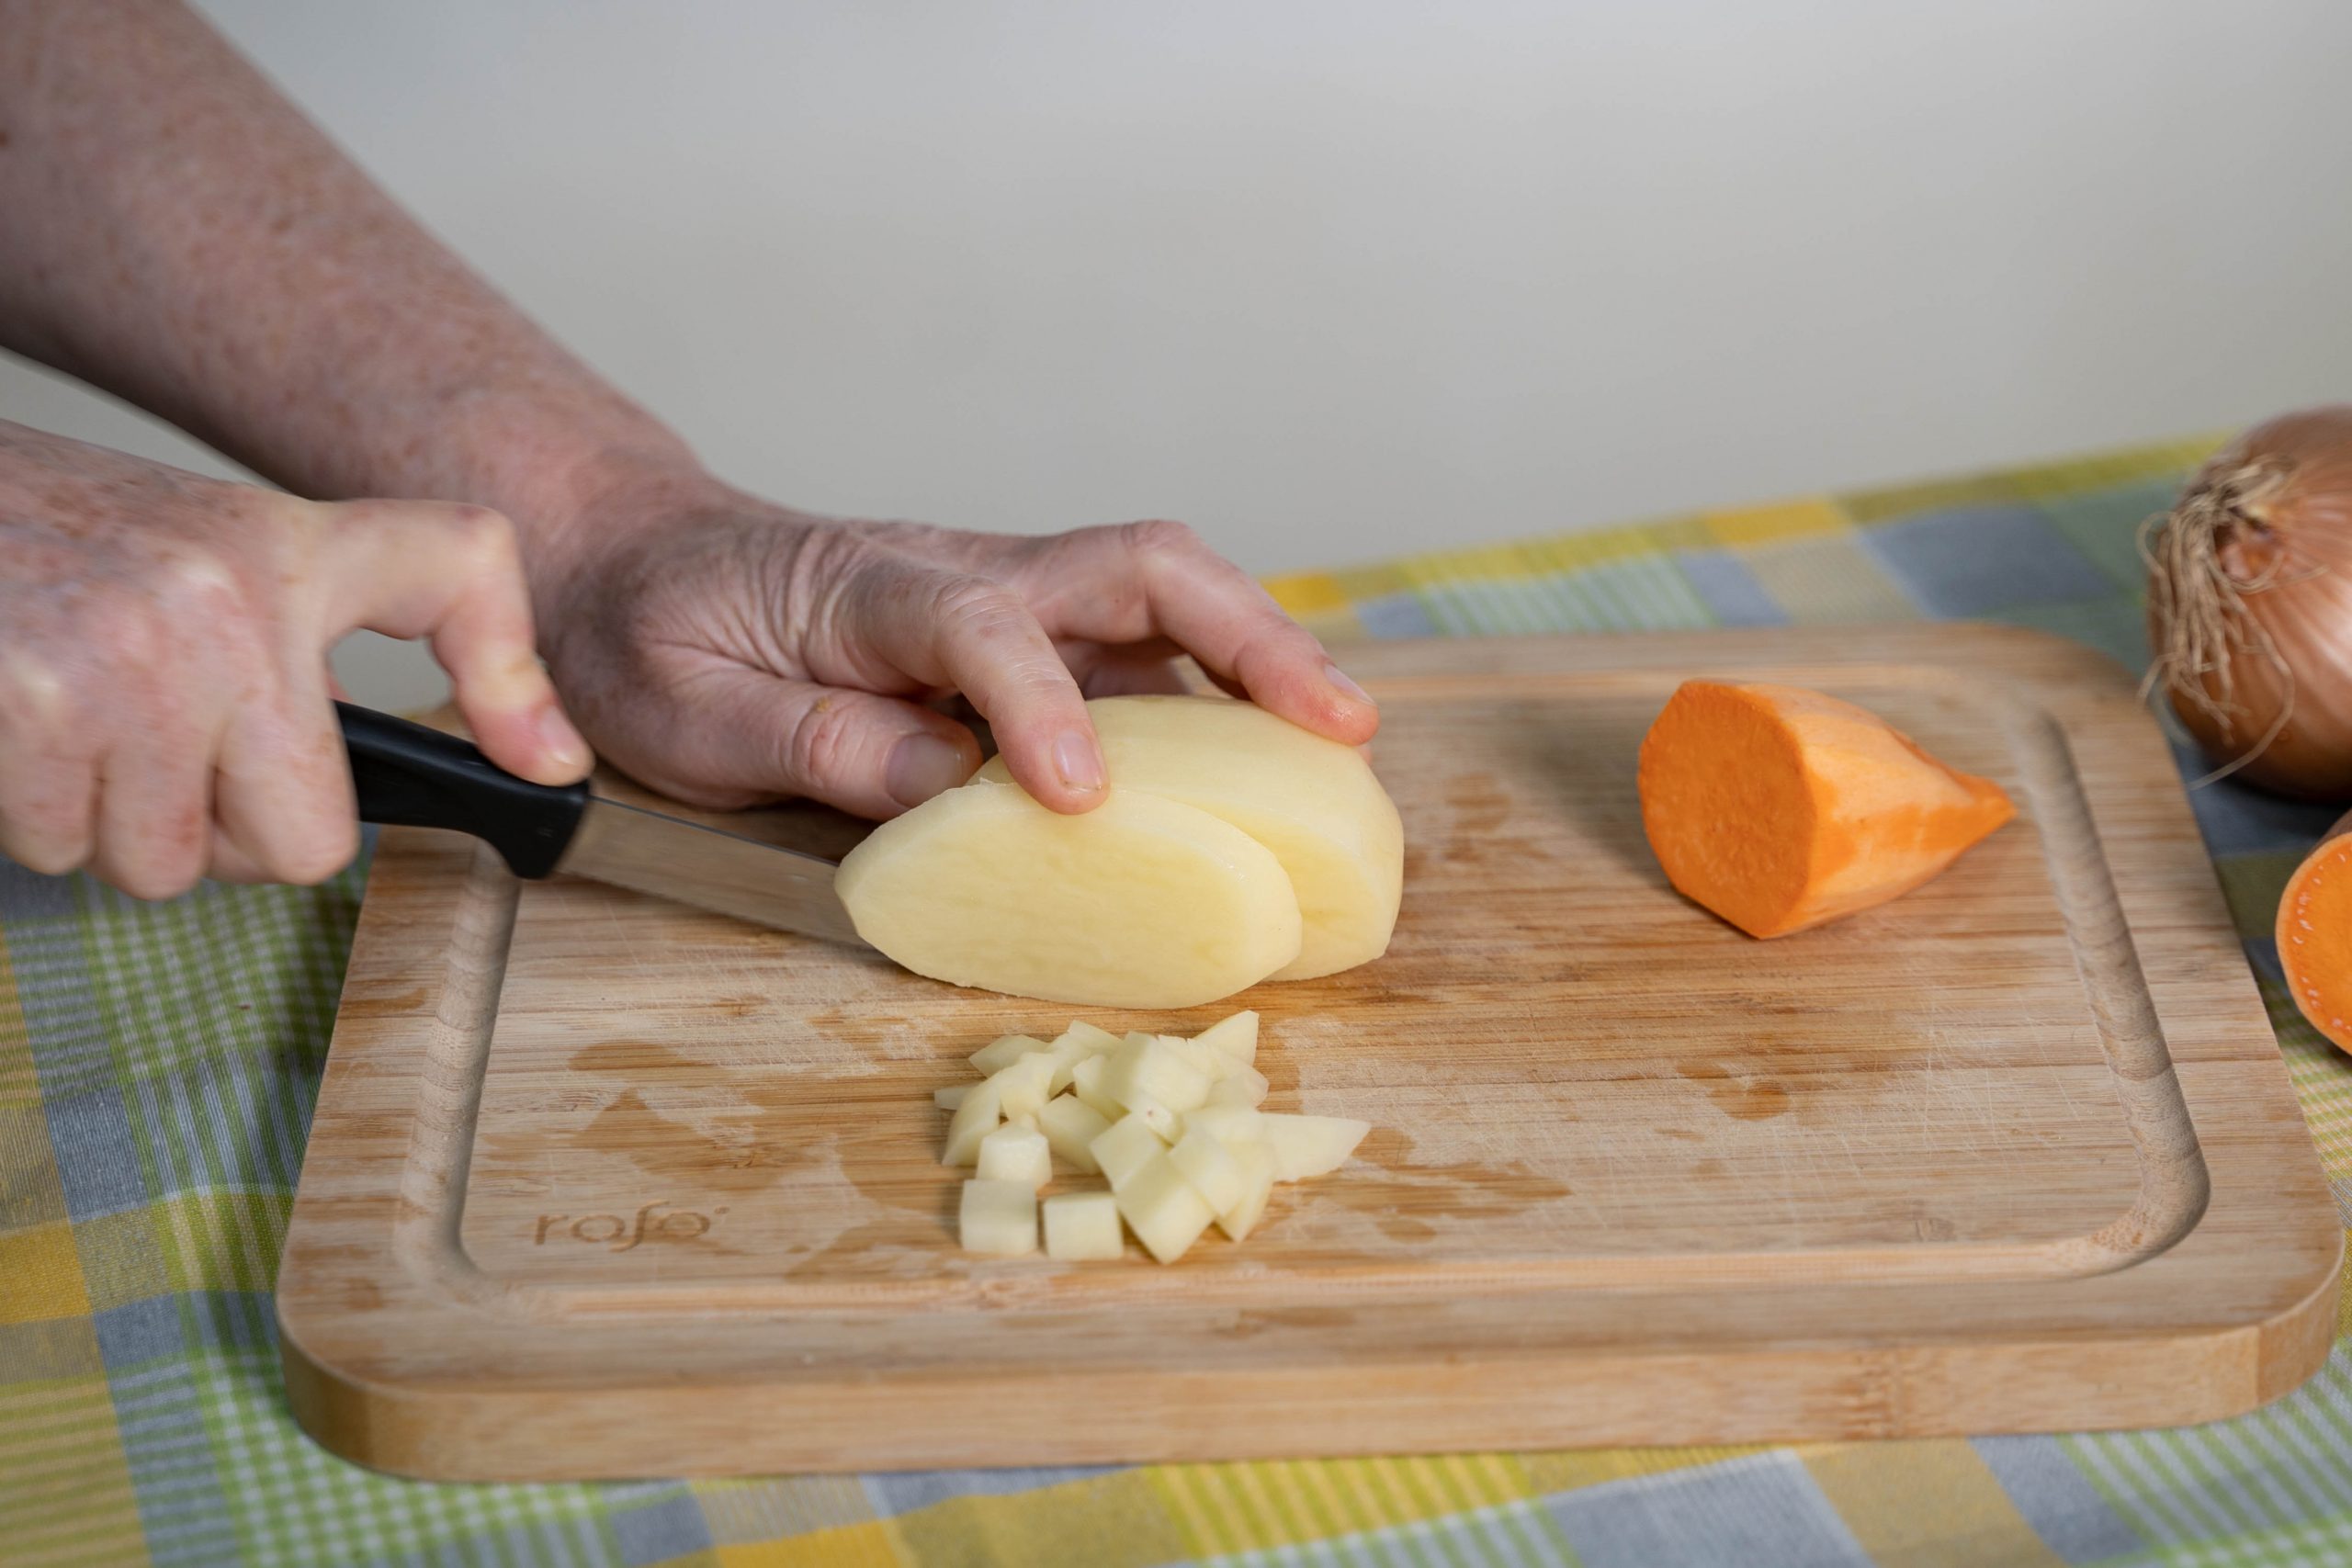 .יד חותכת תפוח אדמה לפרוסות באמצעות סכין, על גבי קרש חיתוך. לצד הפרוסות, קוביות תפוחי אדמה וחצי בטטה. ברקע, על השולחן, בצל